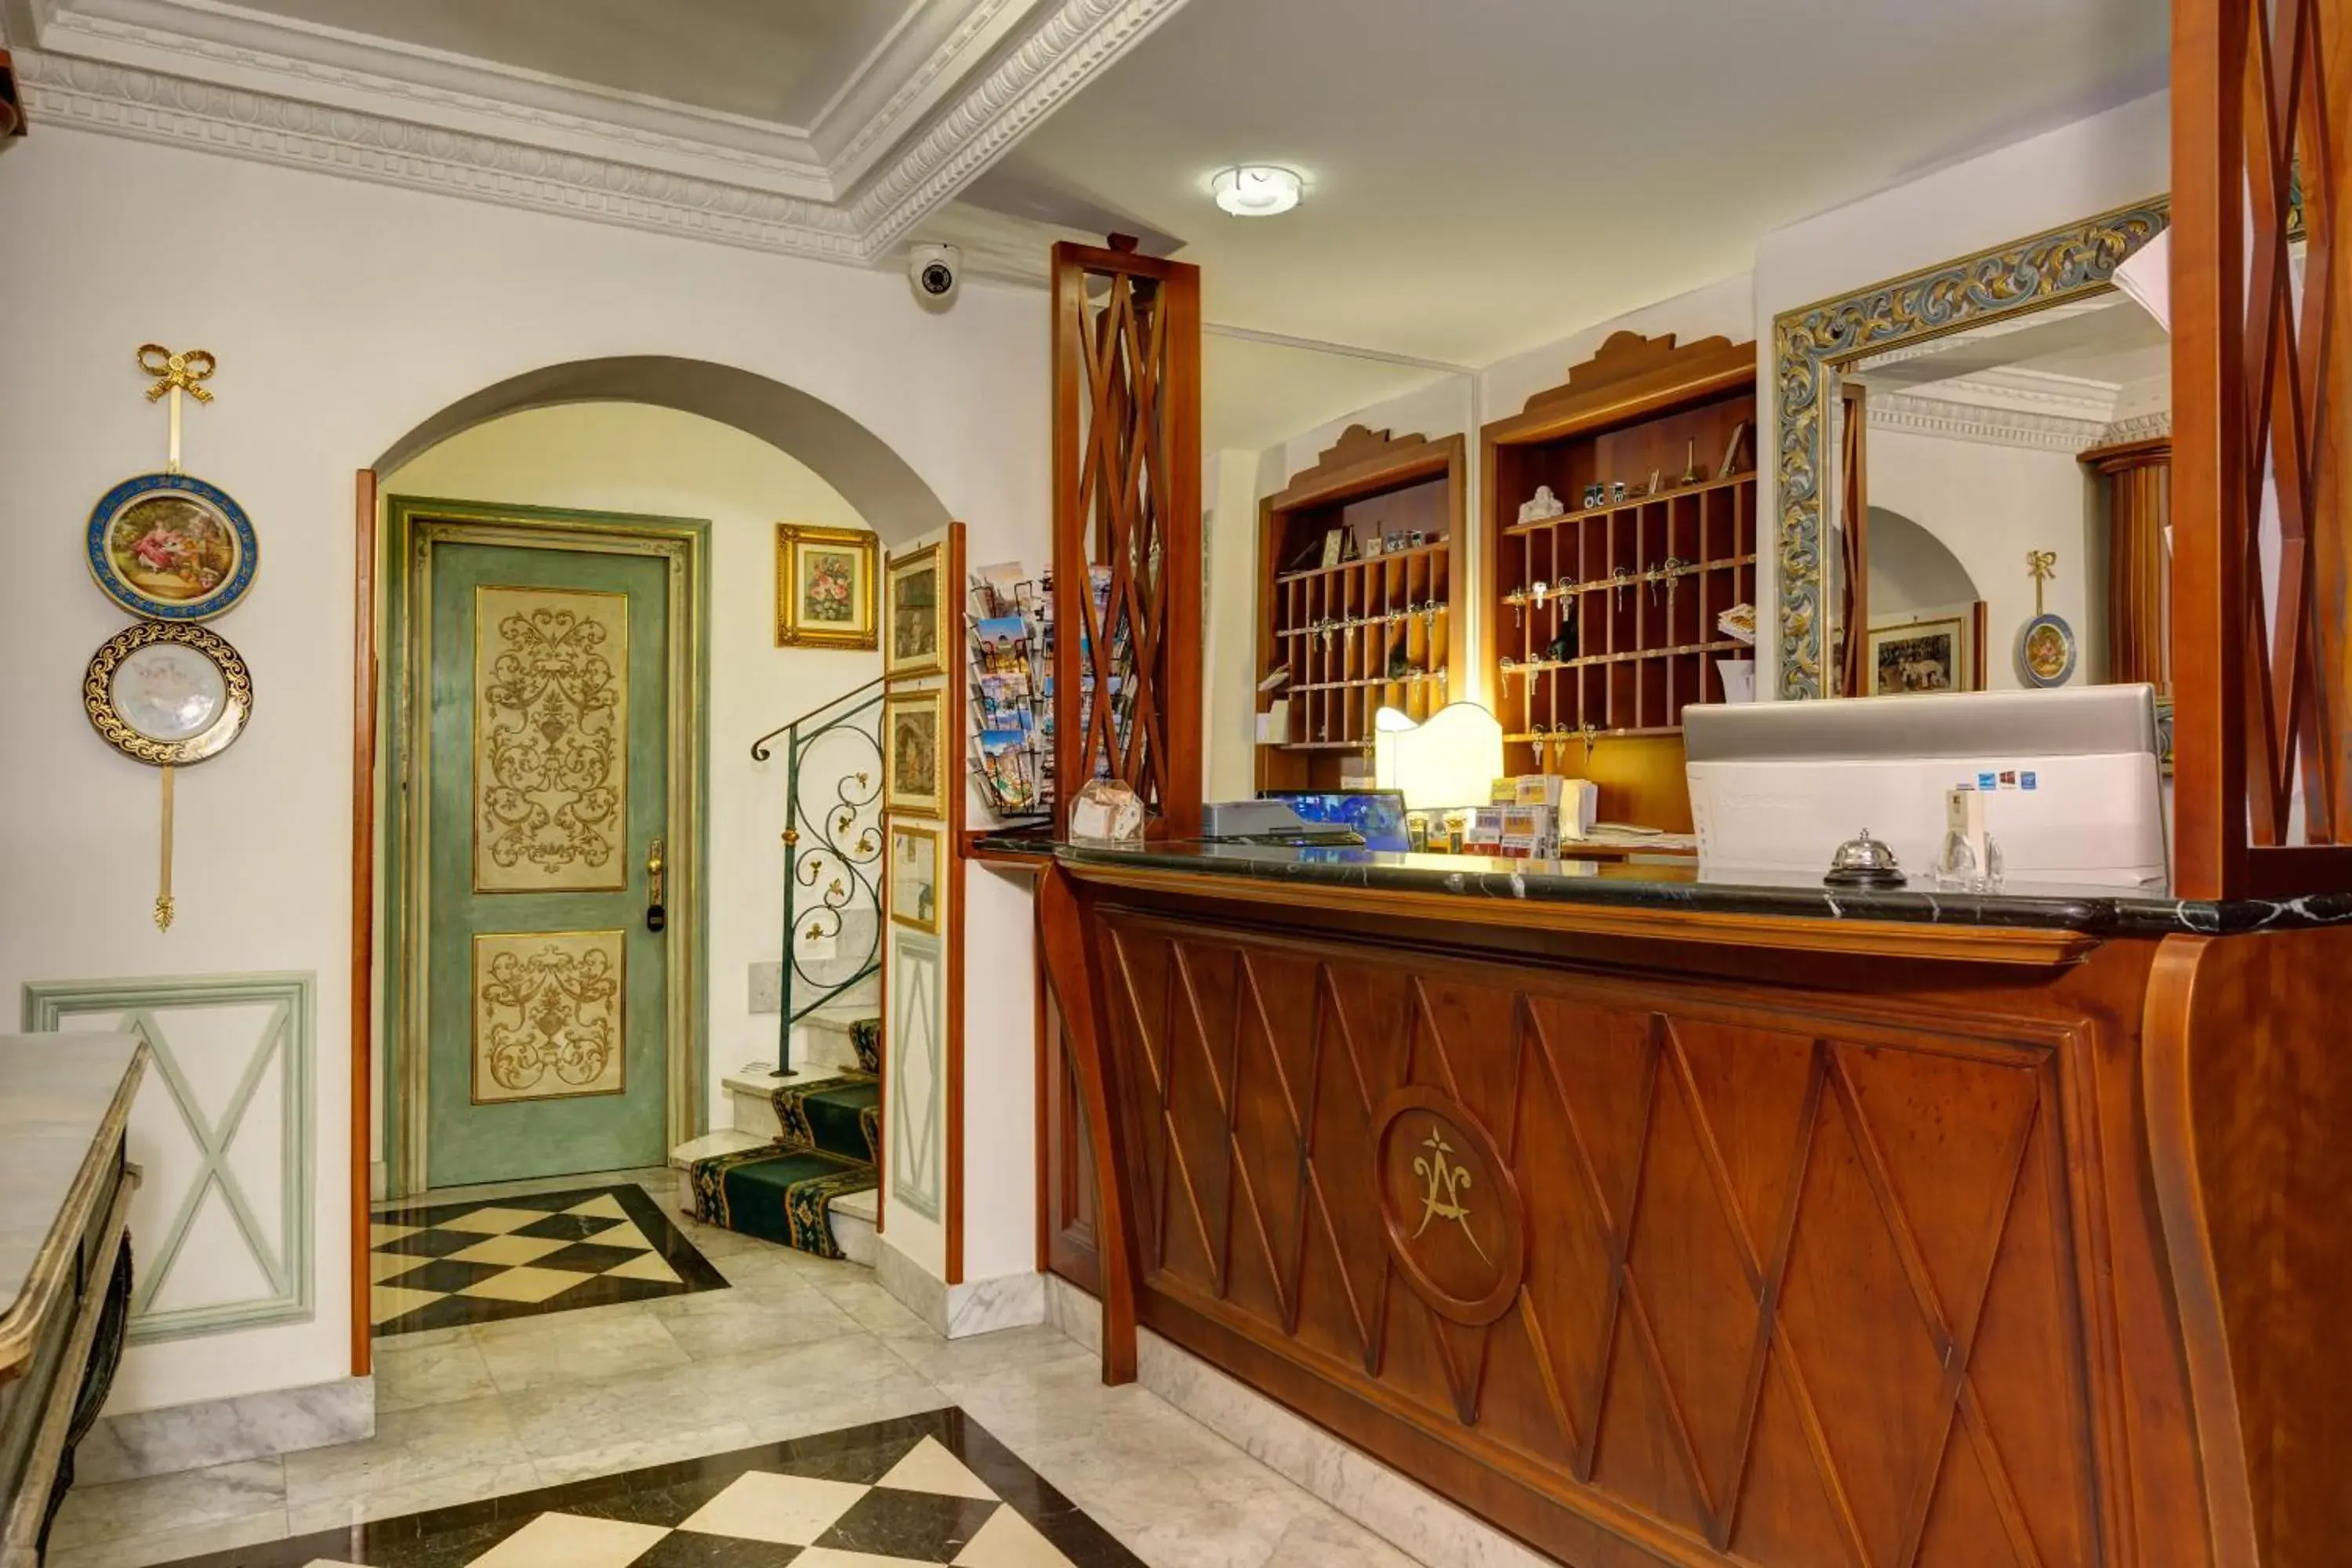 Lobby or reception, Lobby/Reception in Hotel Amalfi